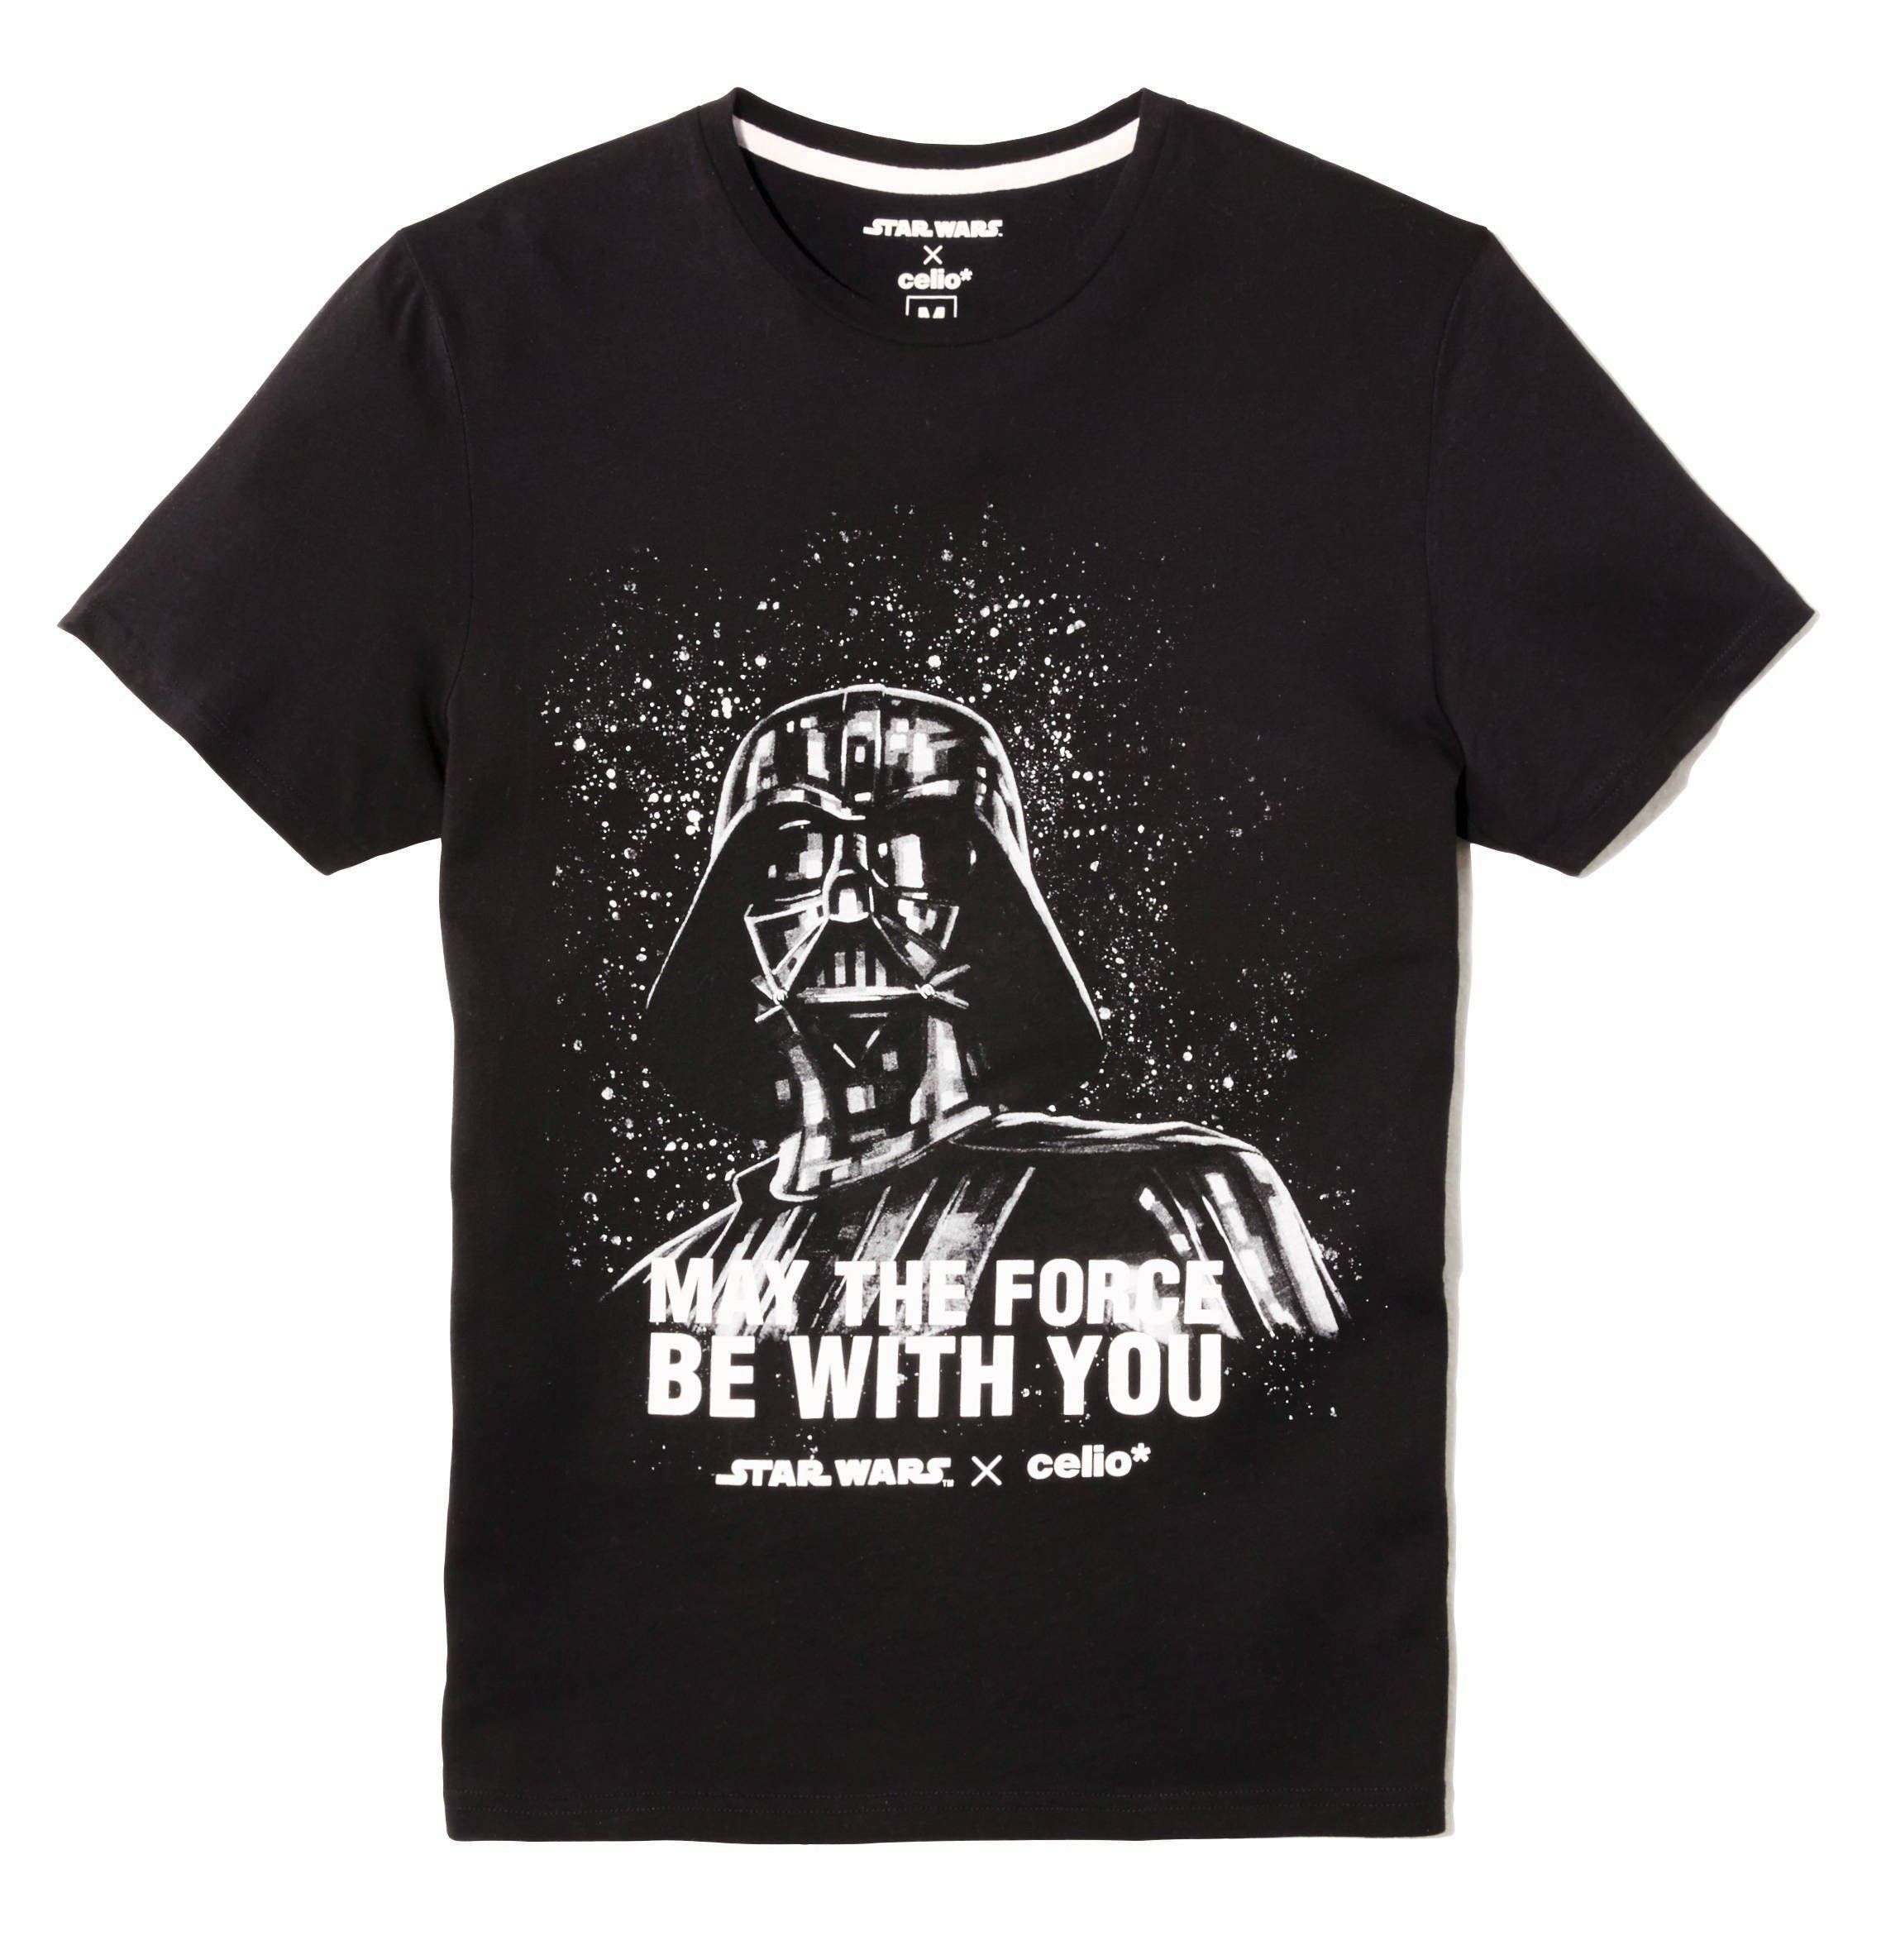 Celio* lance une superbe collection de T-Shirts et de goodies Star Wars #9